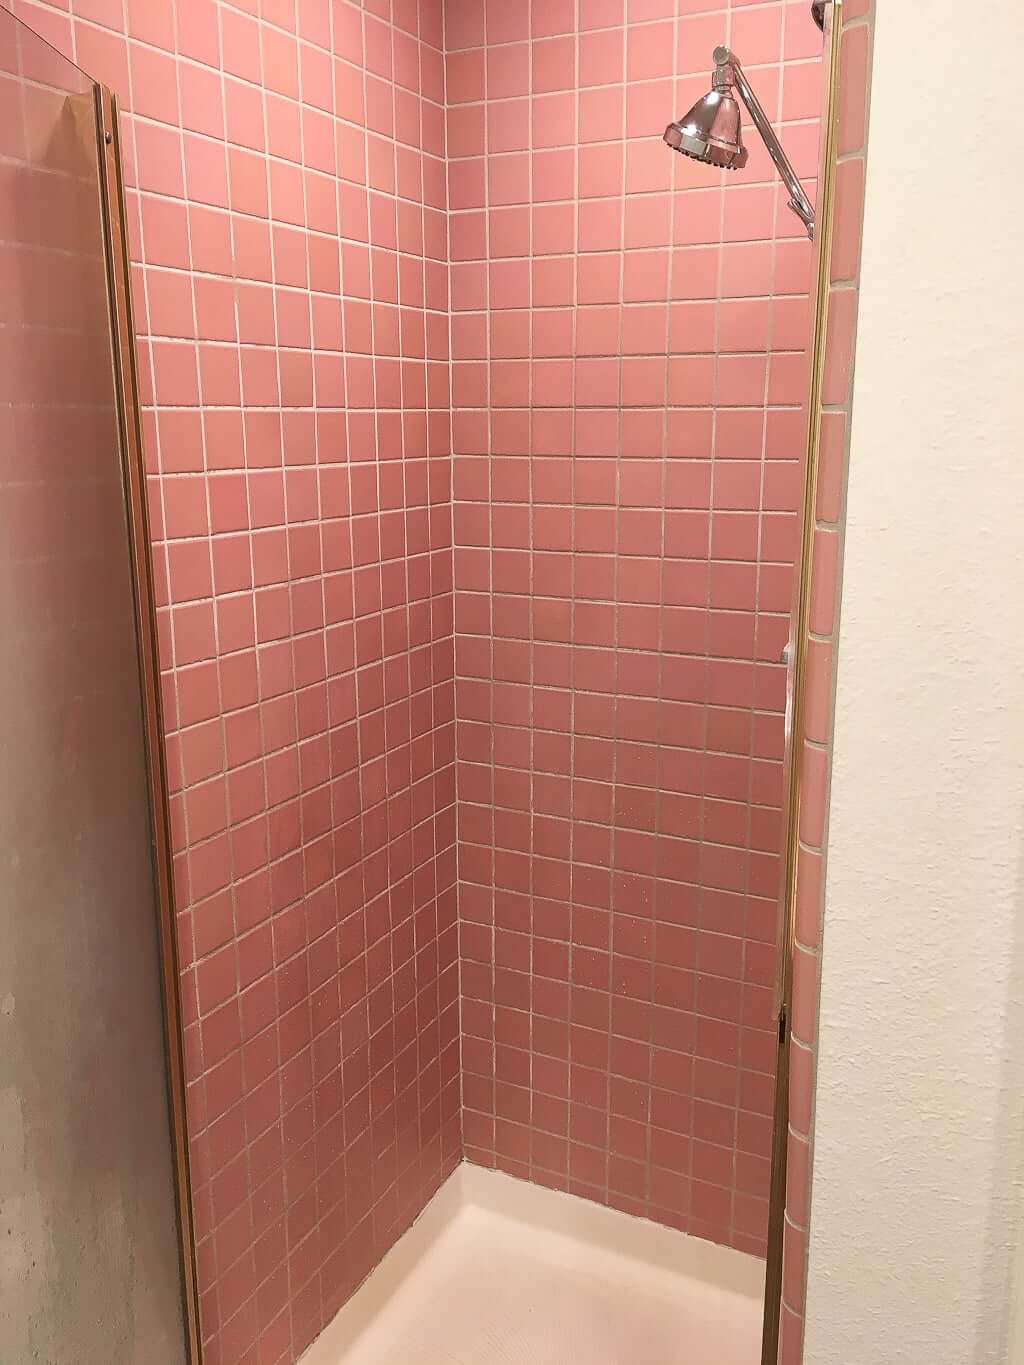 old pink tile shower